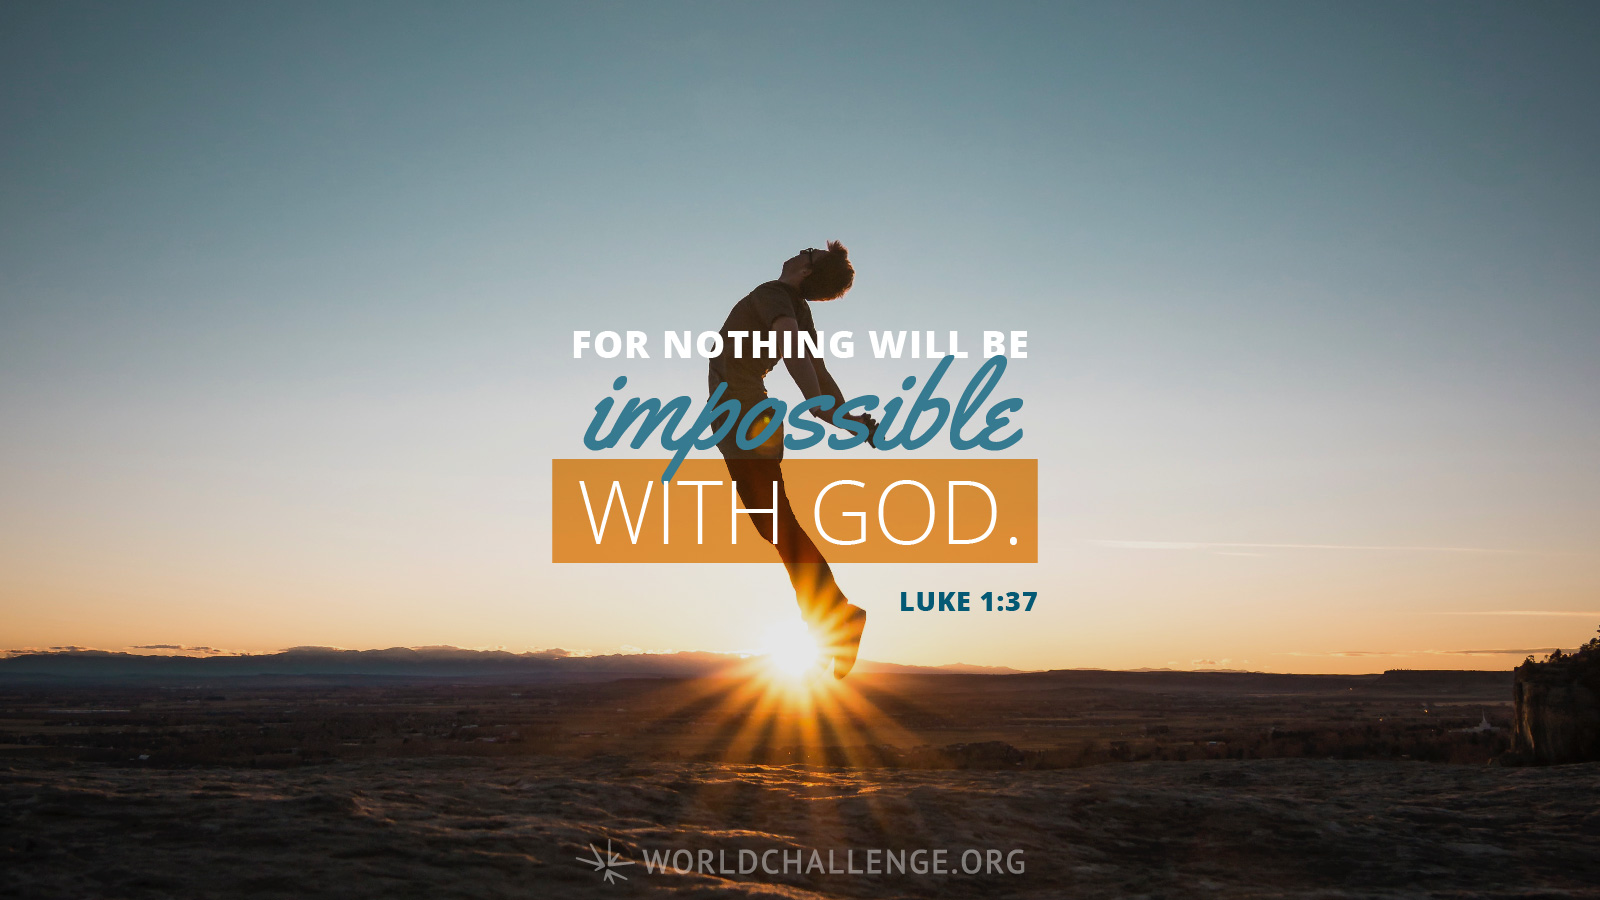 Luke 1:37